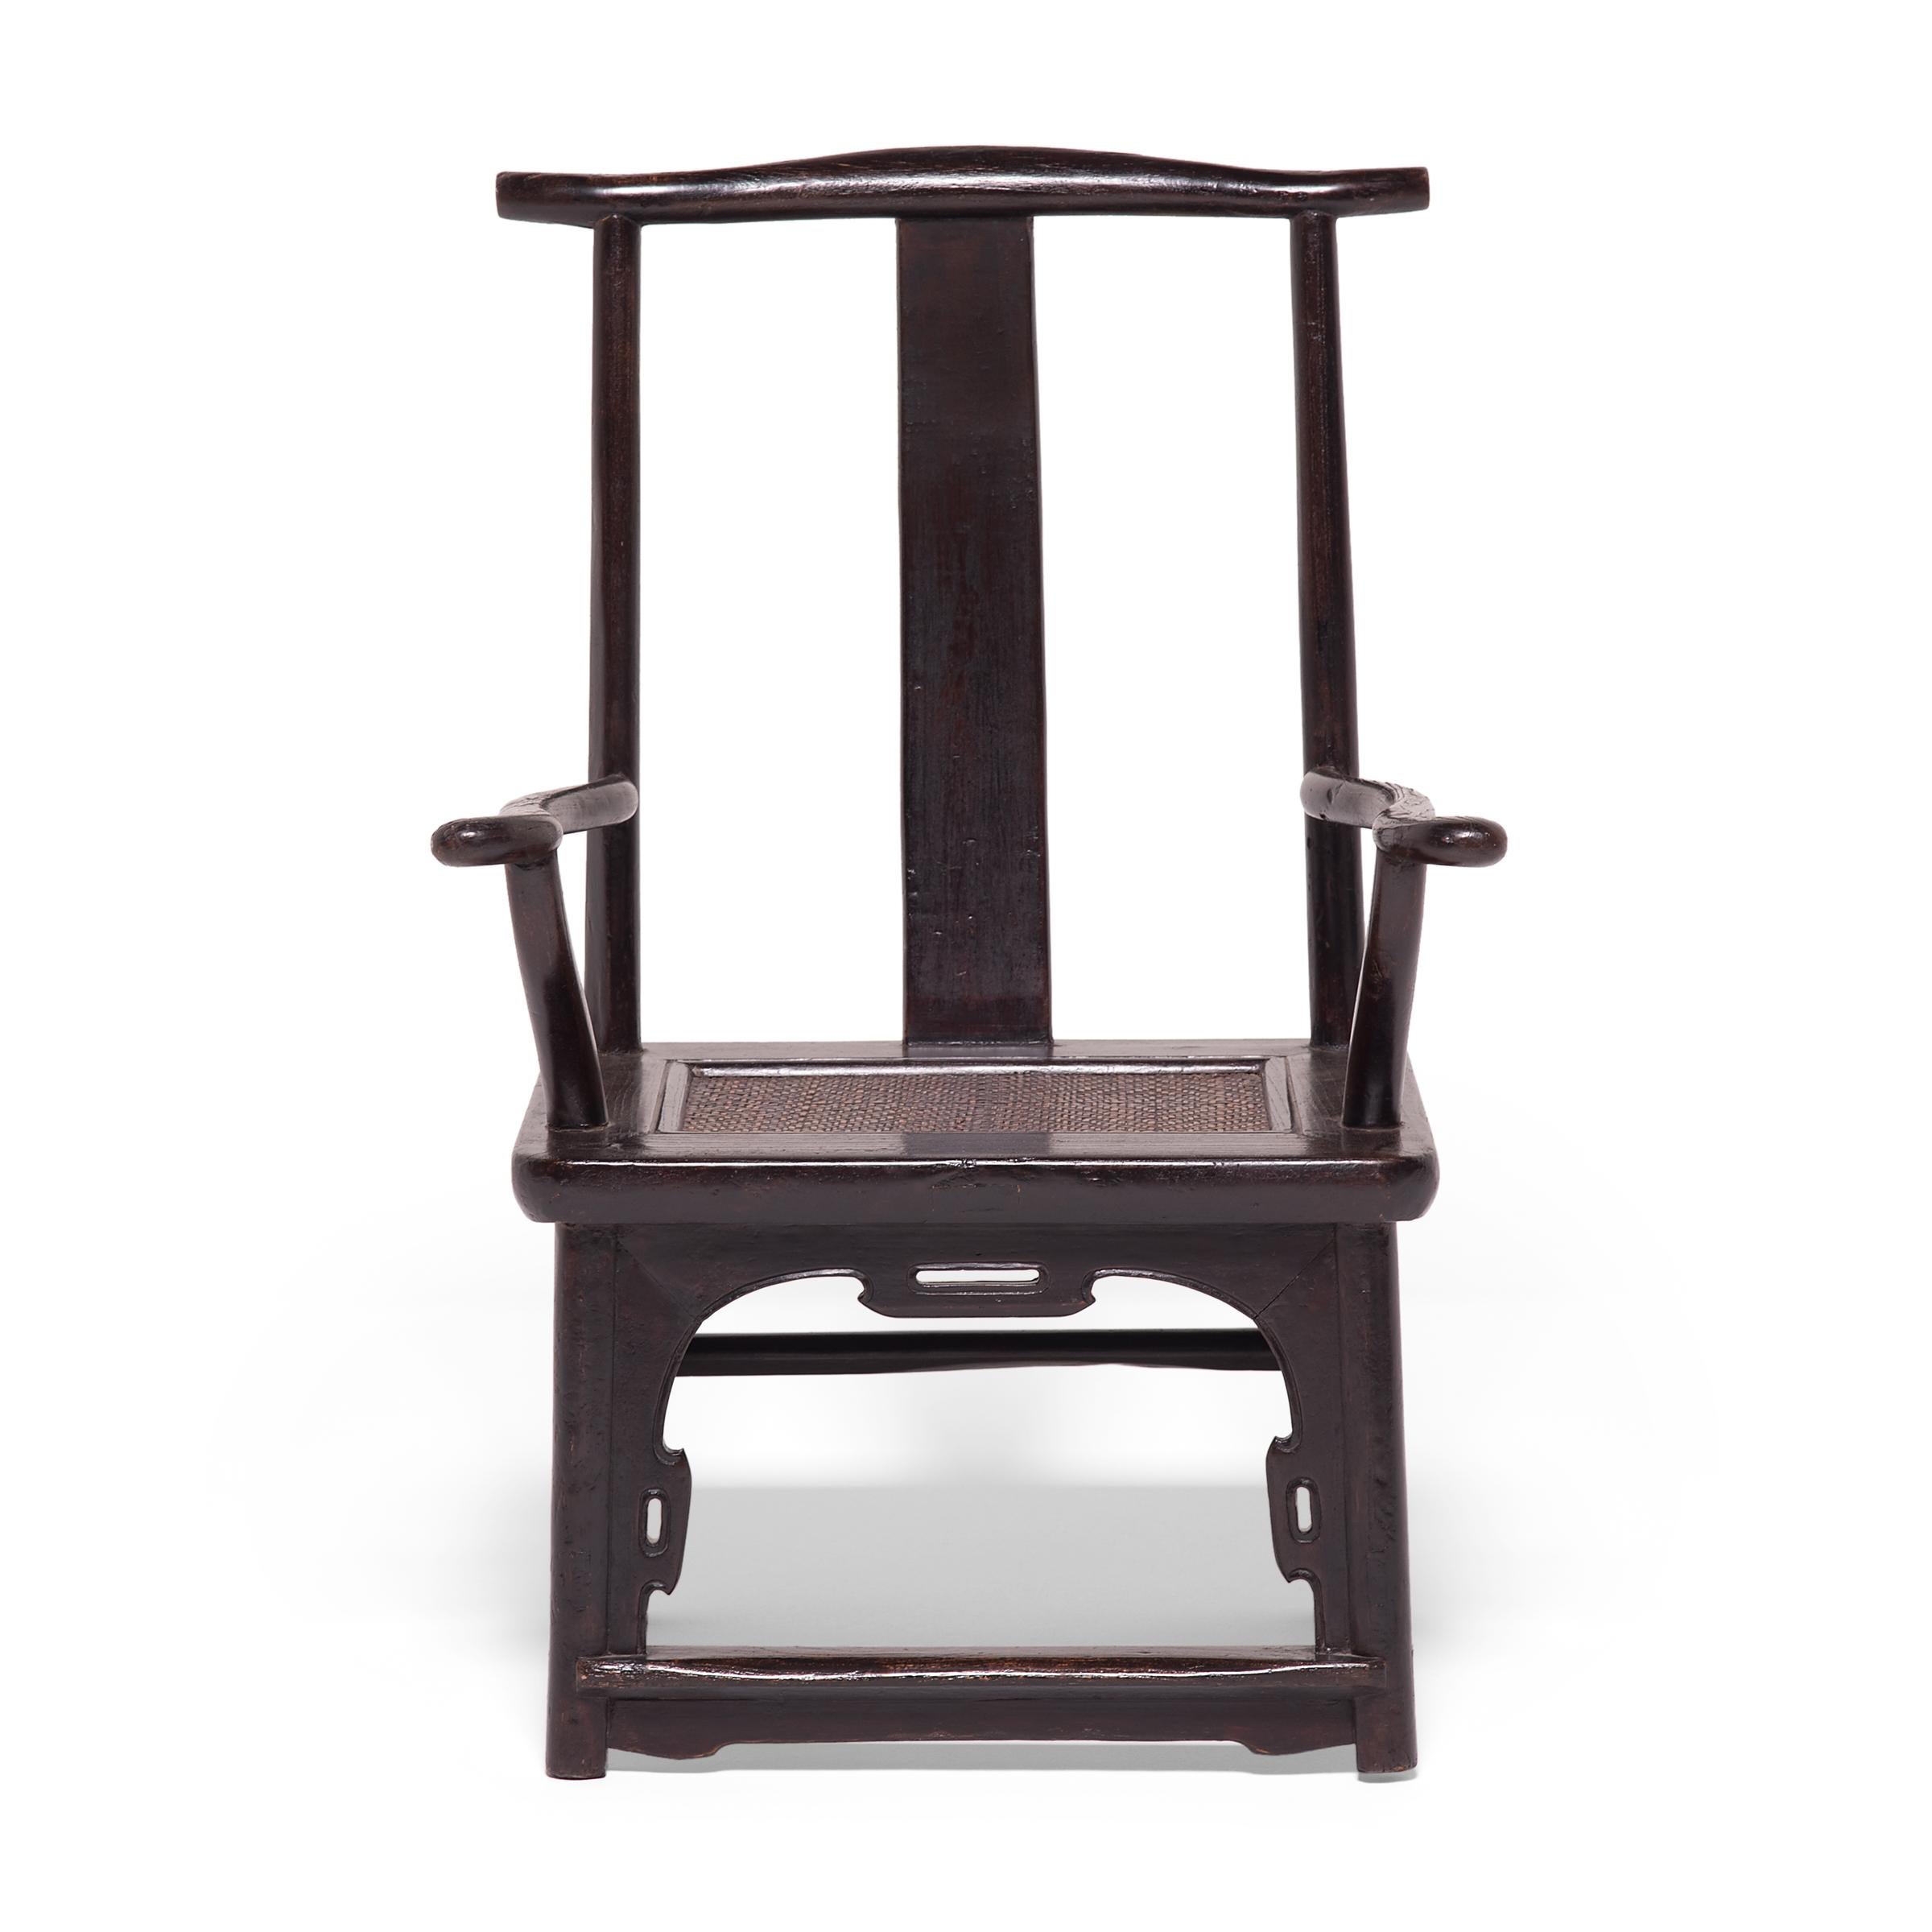 Dieses Paar Stühle mit hoher Rückenlehne aus dem 19. Jahrhundert ist aufgrund seiner geringen Größe ungewöhnlich und stellt eine winzige Aktualisierung des klassischen Sessels mit Jochlehne dar, der seit der Song-Dynastie beliebt ist. Der auch als